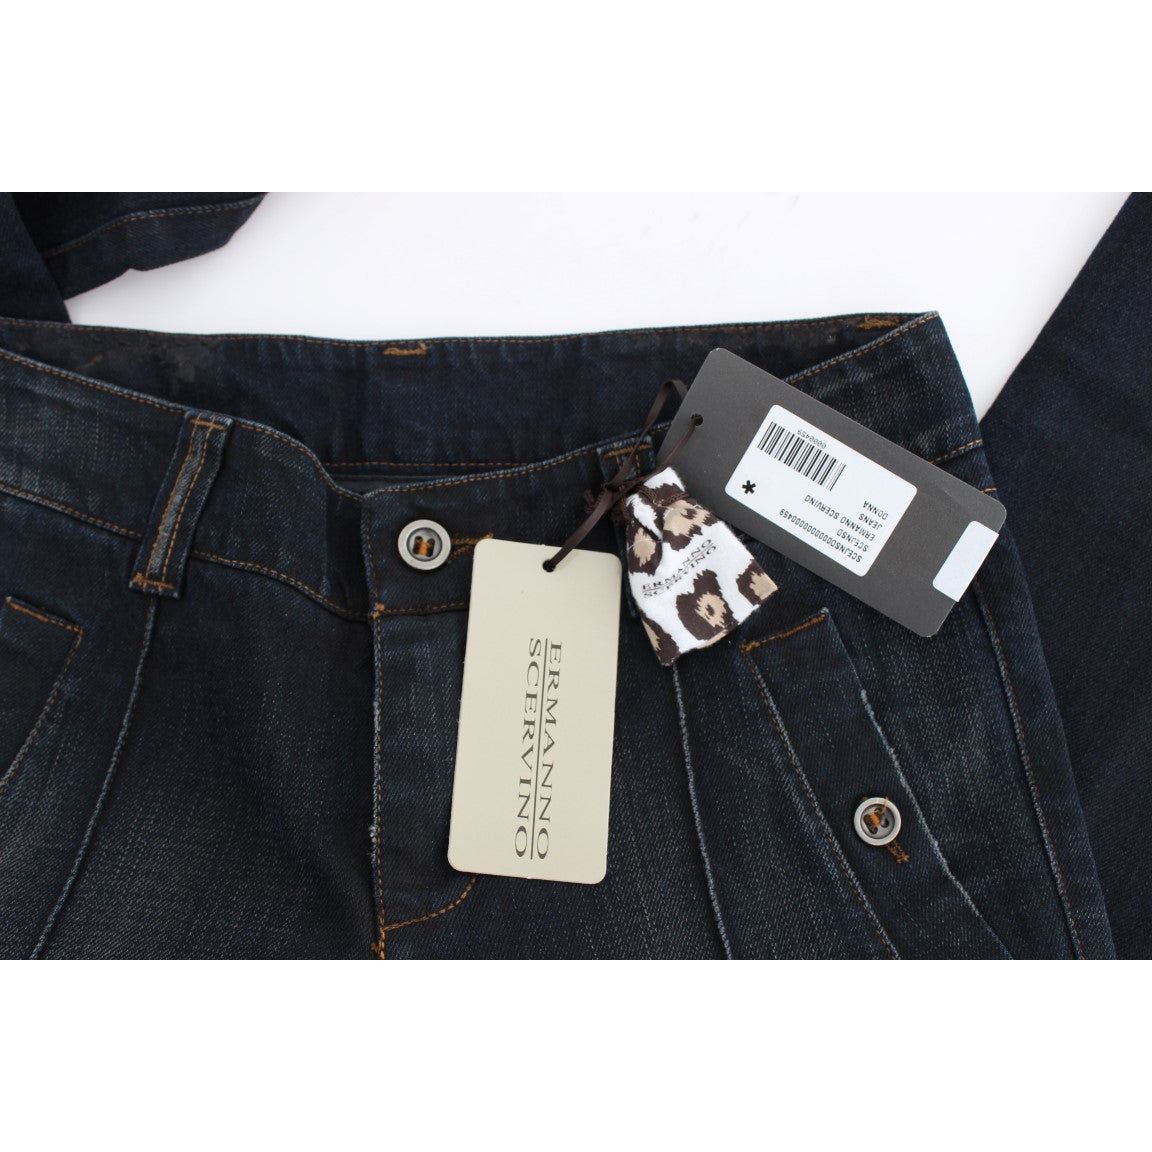 Ermanno Scervino Chic Slim Fit Italian Cotton Jeans blue-wash-cotton-slim-fit-jeans